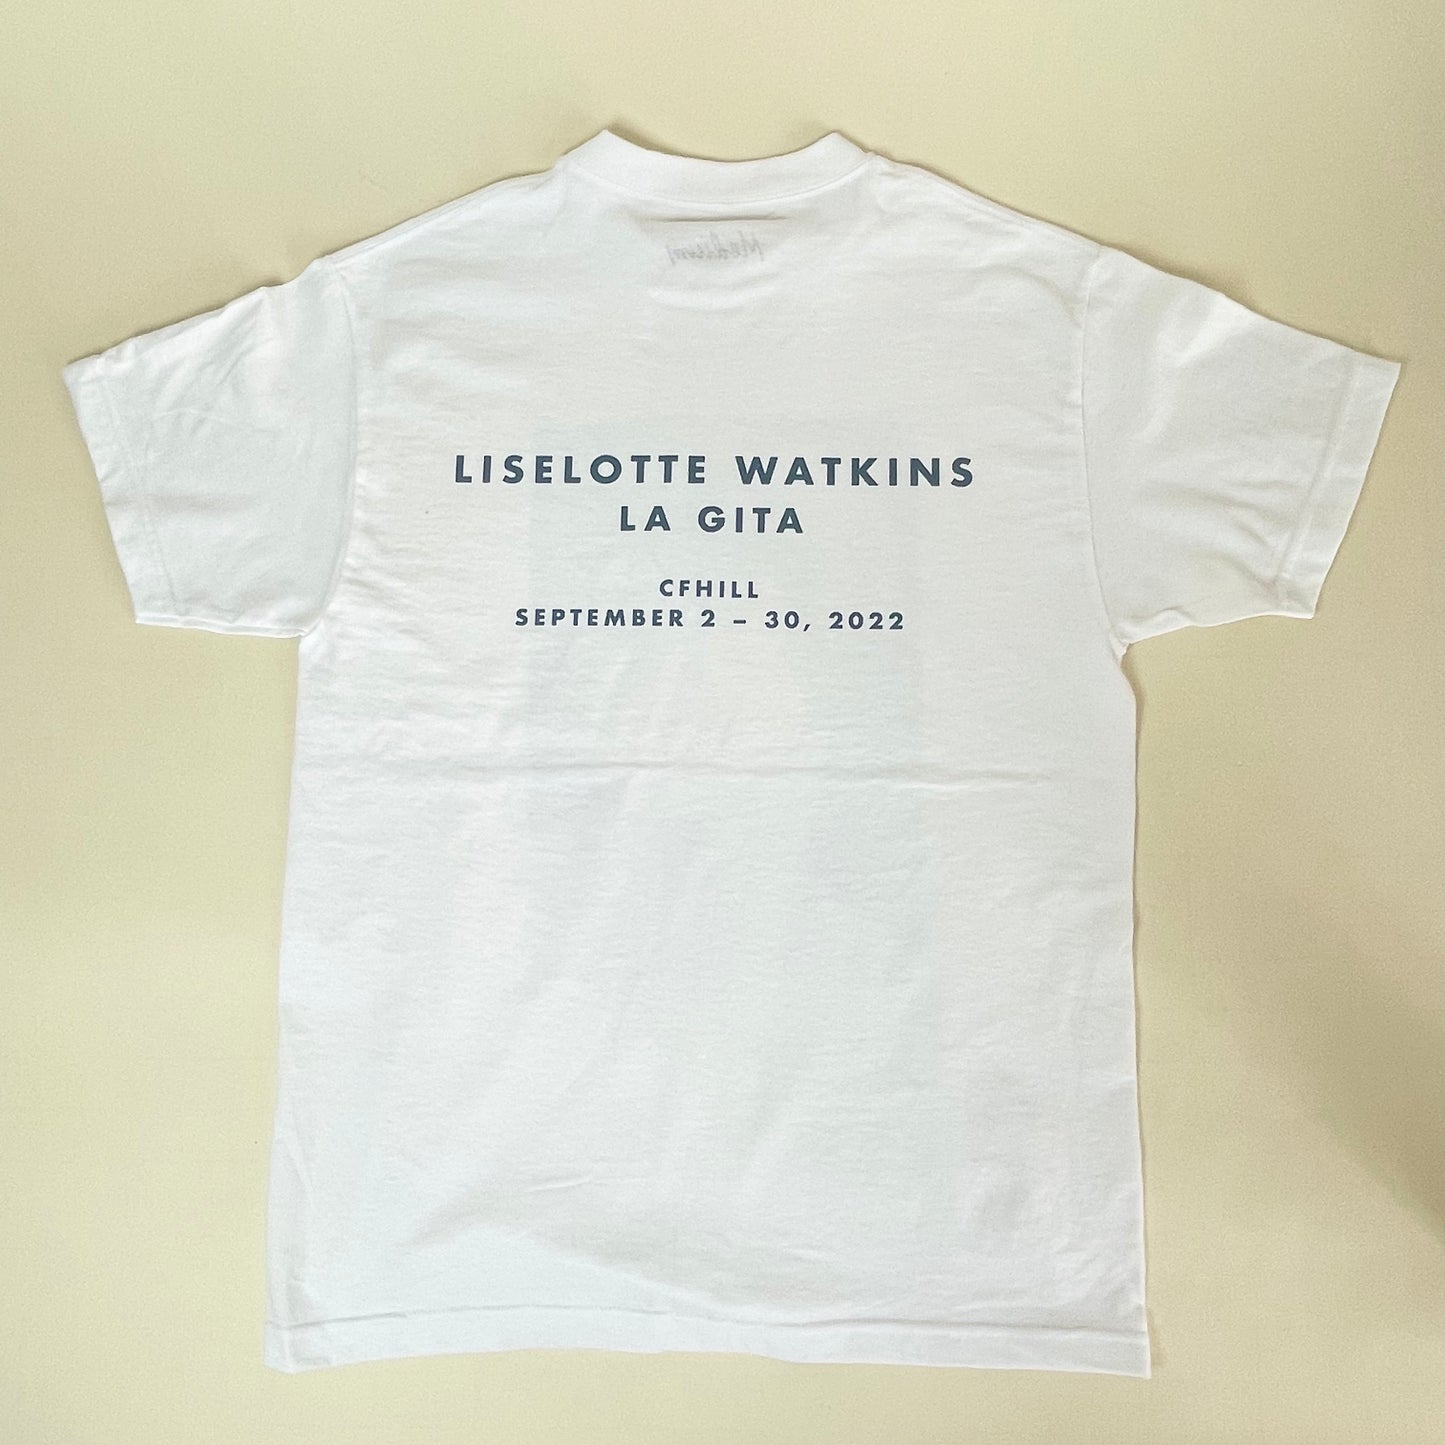 "La Gita" - David" T-shirt by Liselotte Watkins